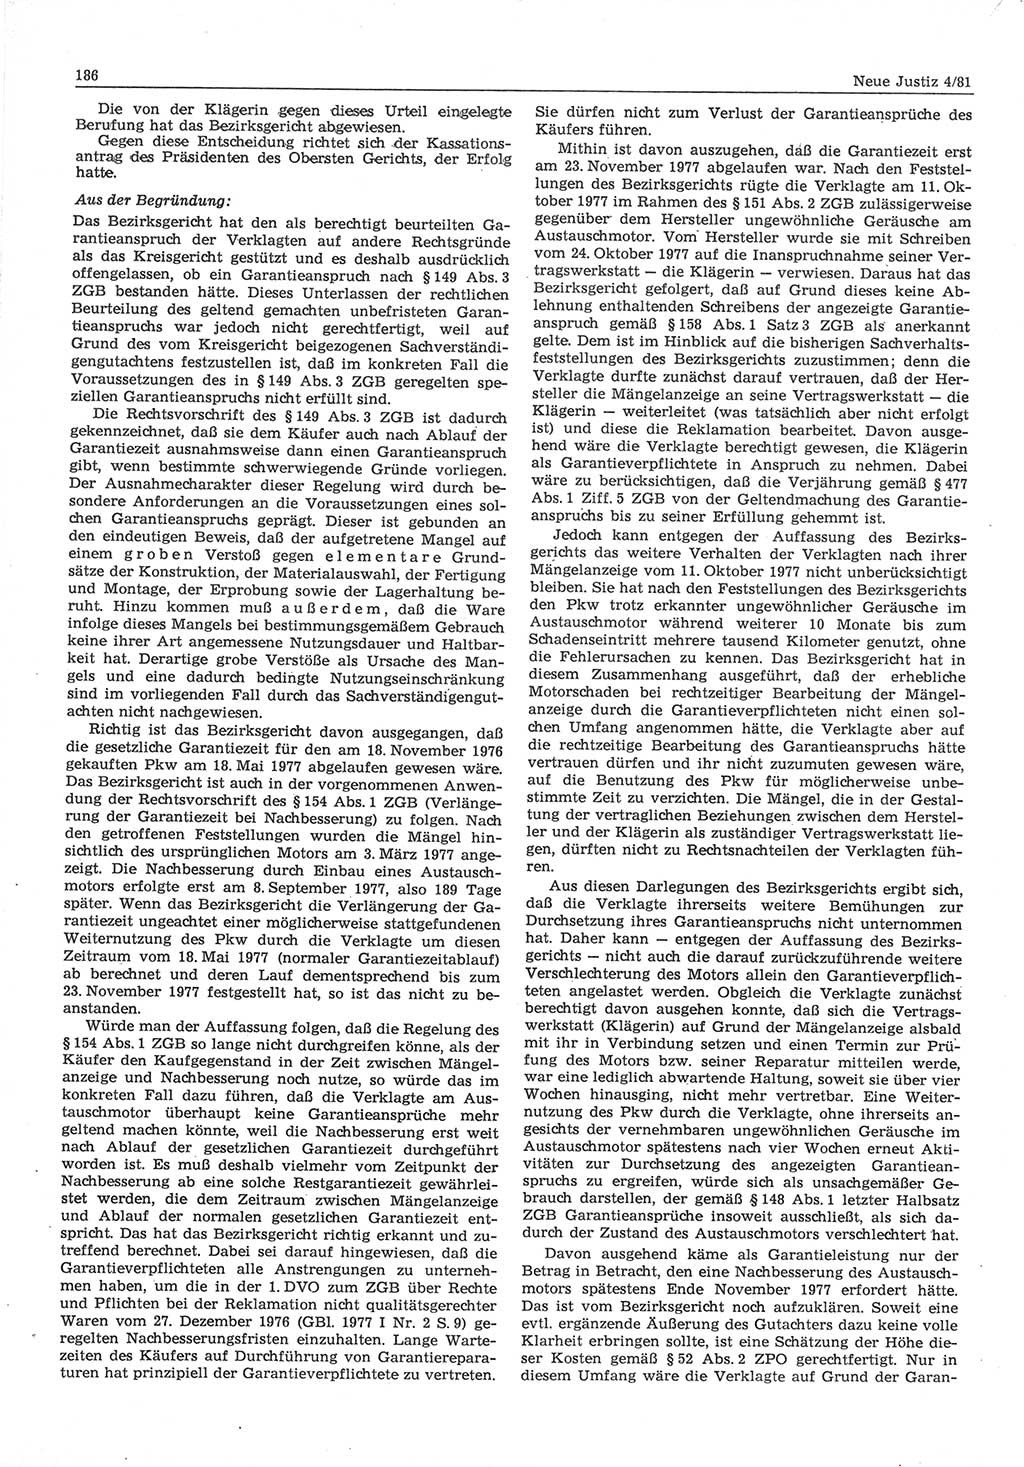 Neue Justiz (NJ), Zeitschrift für sozialistisches Recht und Gesetzlichkeit [Deutsche Demokratische Republik (DDR)], 35. Jahrgang 1981, Seite 186 (NJ DDR 1981, S. 186)